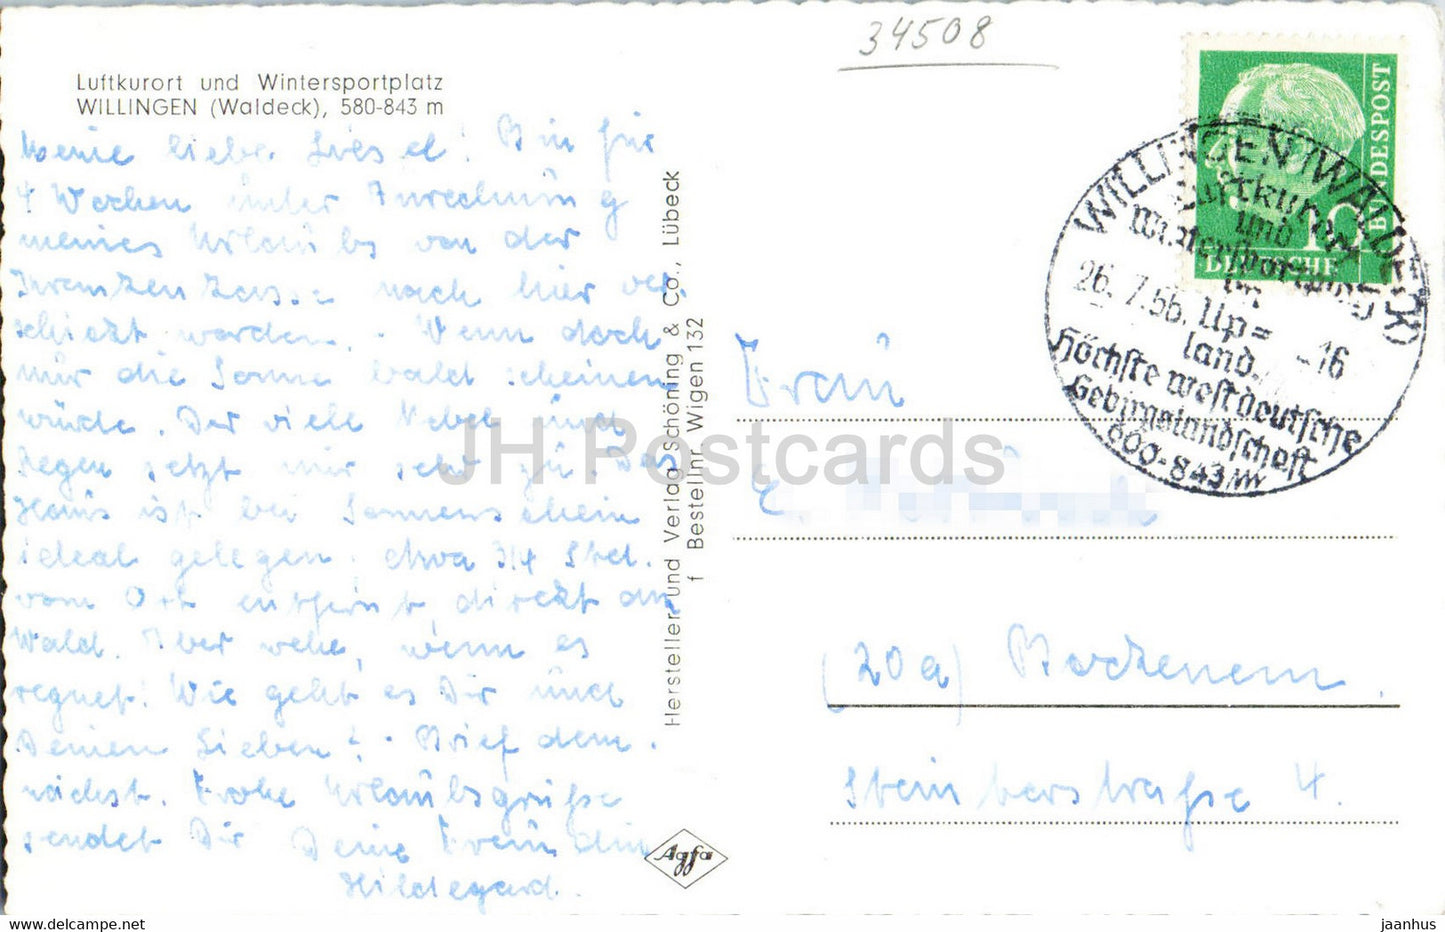 Willingen - Waldeck - 580 843 m - old postcard - 1956 - Germany - used